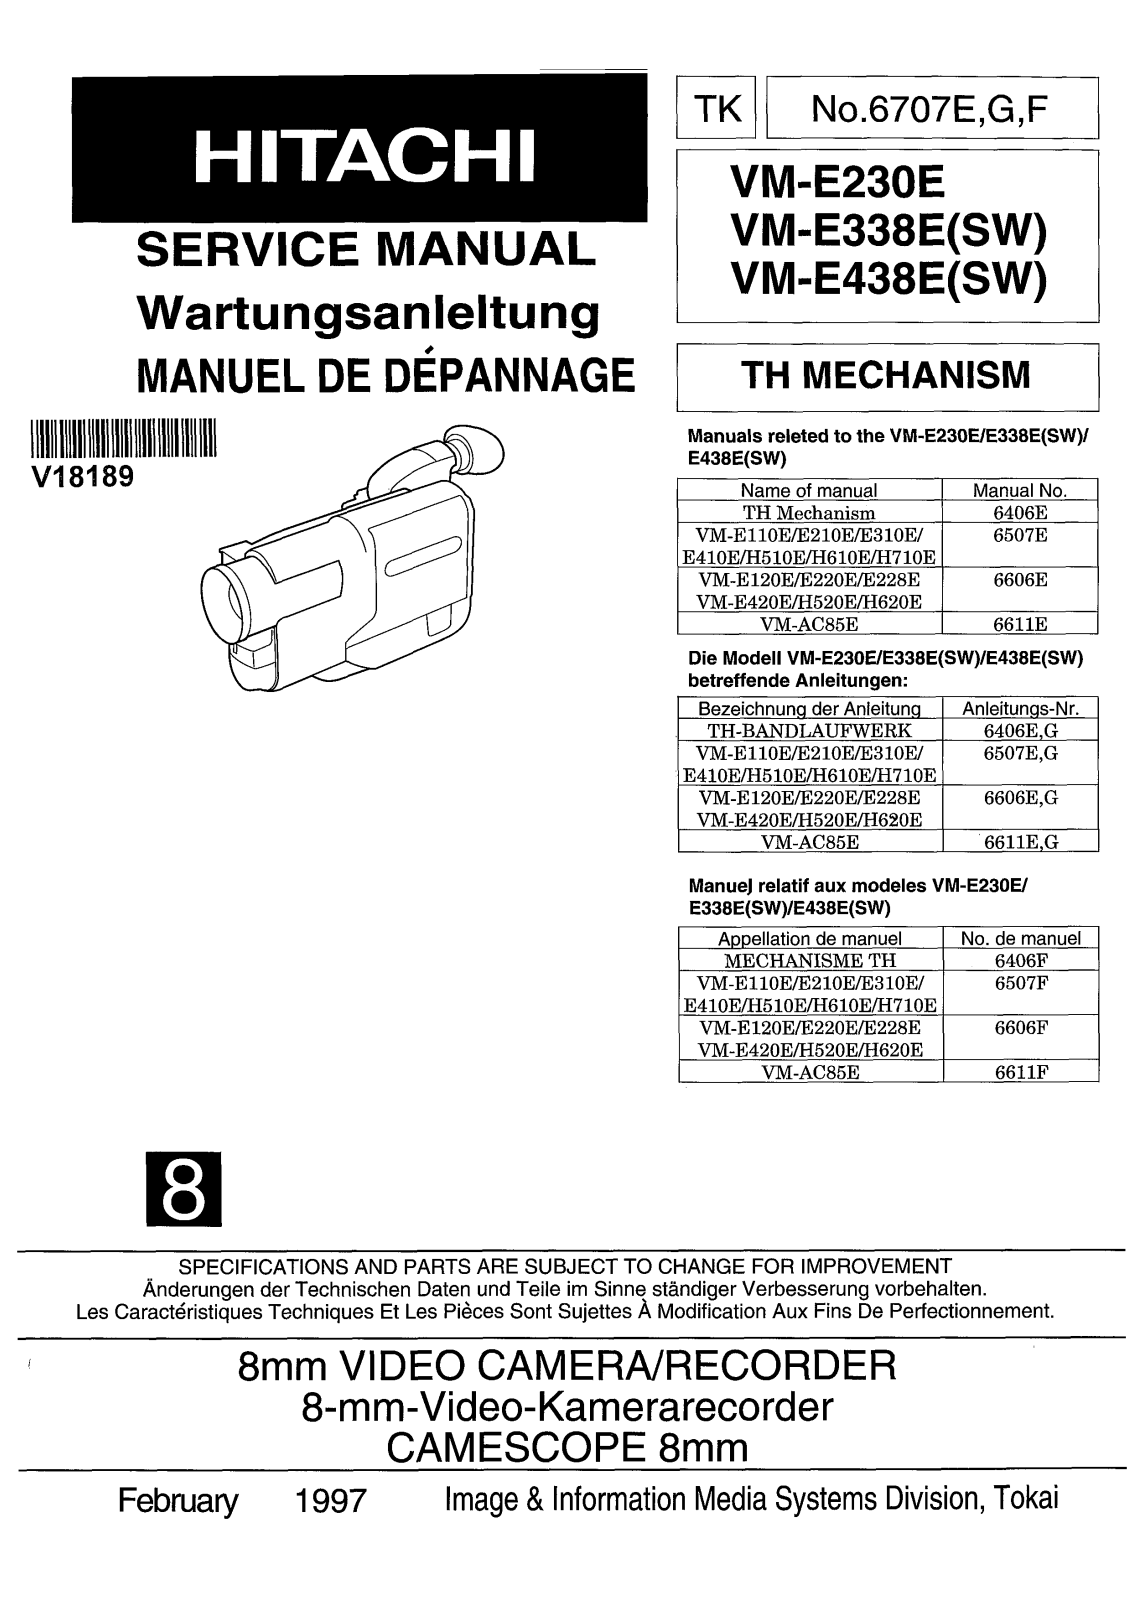 Hitachi VM-E438E-SW, VM-E338E-SW, VM-E230E Service Manual